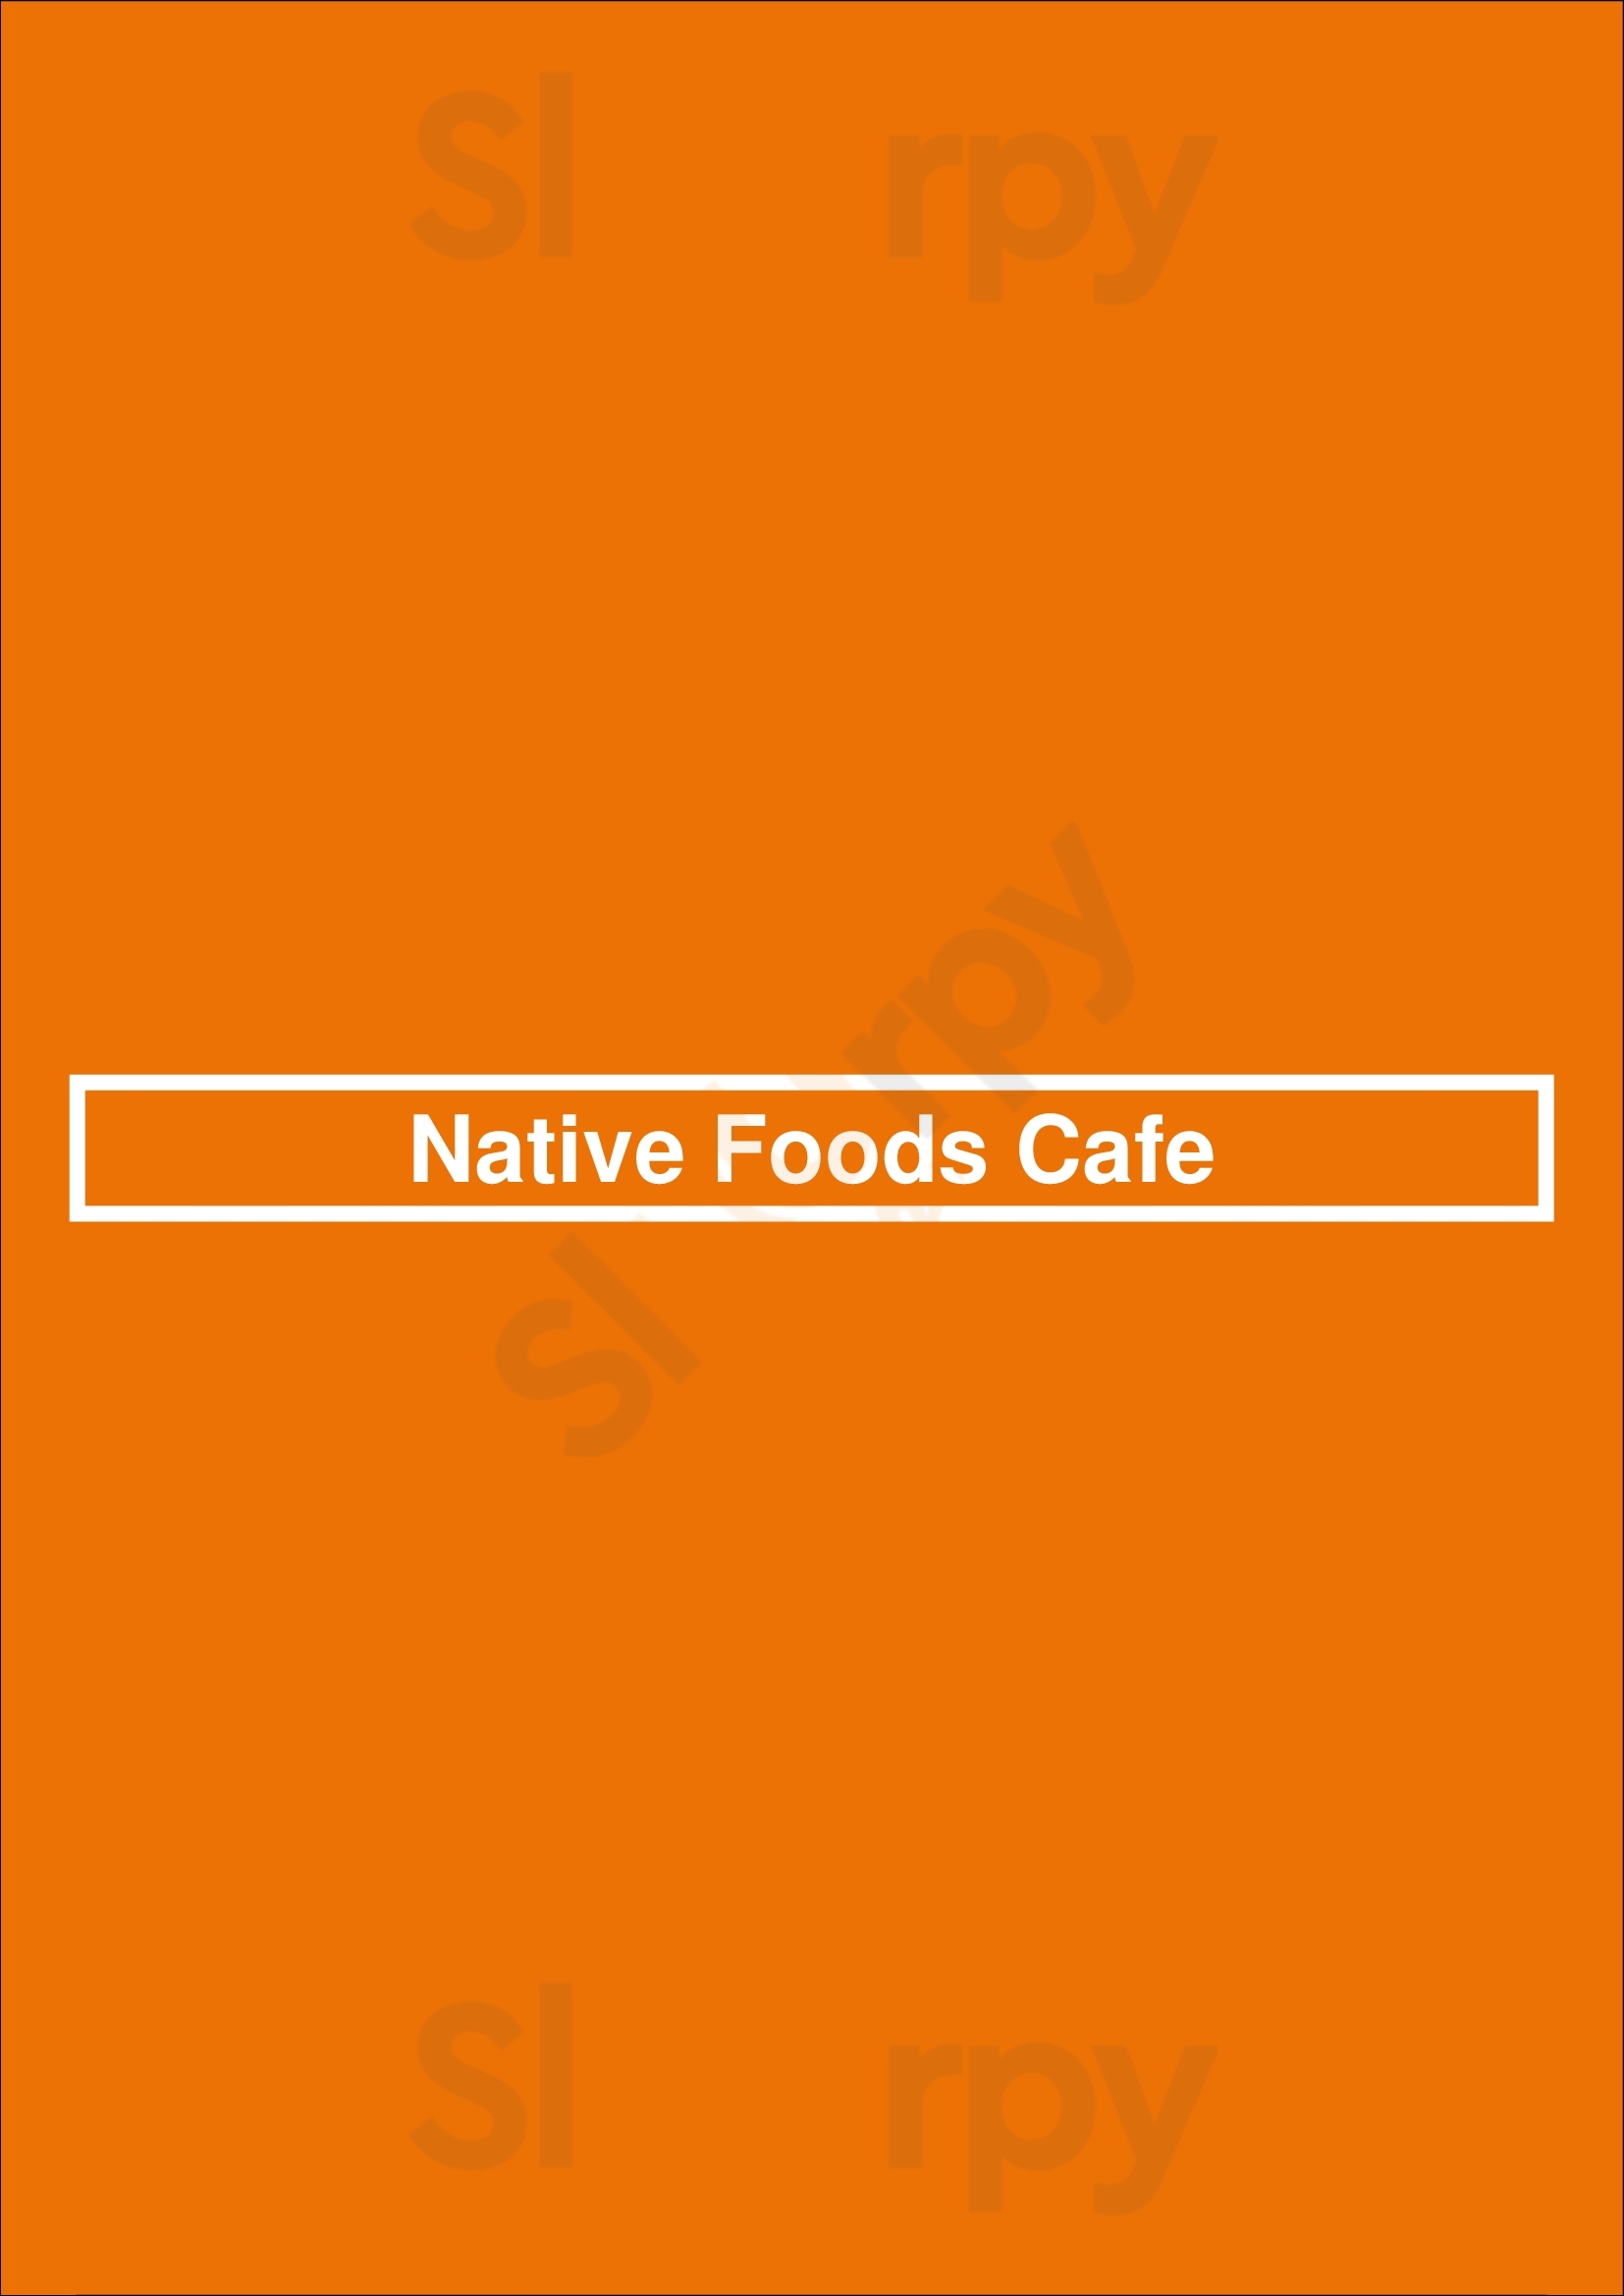 Native Foods Cafe Chicago Menu - 1